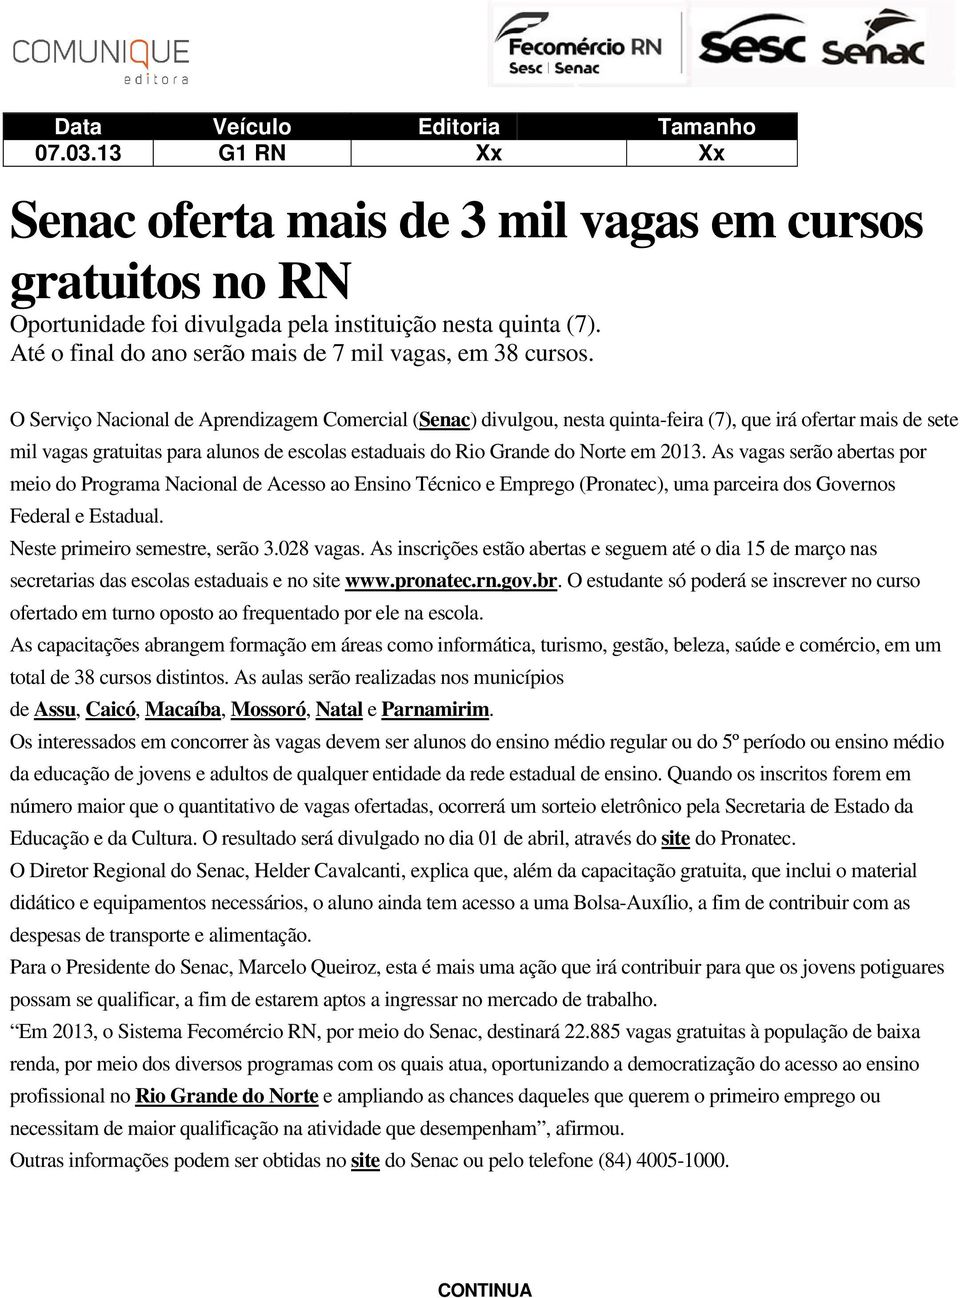 O Serviço Nacional de Aprendizagem Comercial (Senac) divulgou, nesta quinta-feira (7), que irá ofertar mais de sete mil vagas gratuitas para alunos de escolas estaduais do Rio Grande do Norte em 2013.